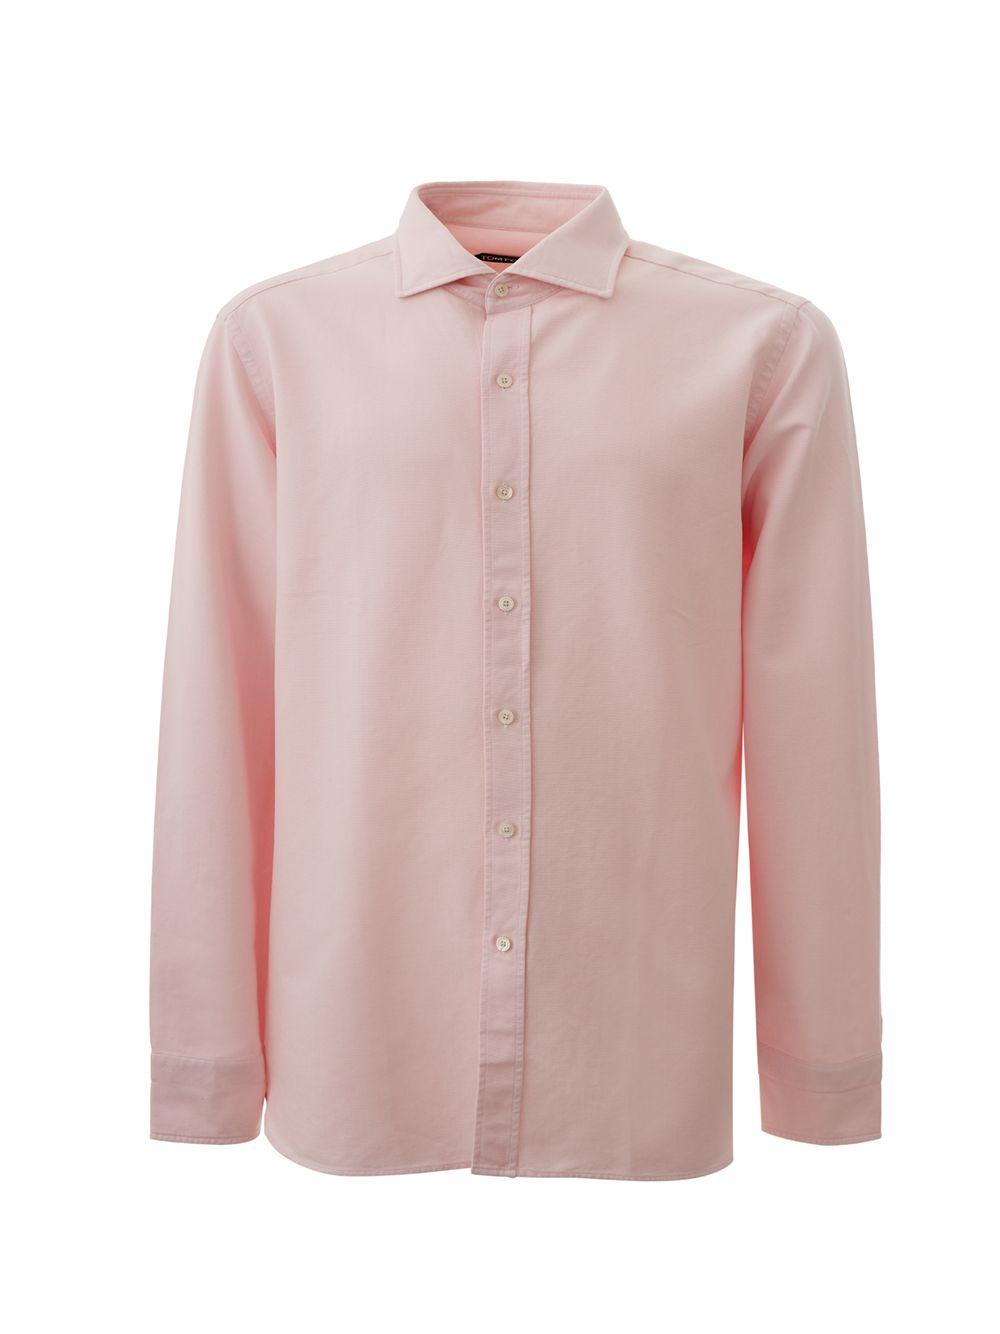 Tom Ford Pink Long Sleeves Regular Fit Shirt - Ellie Belle